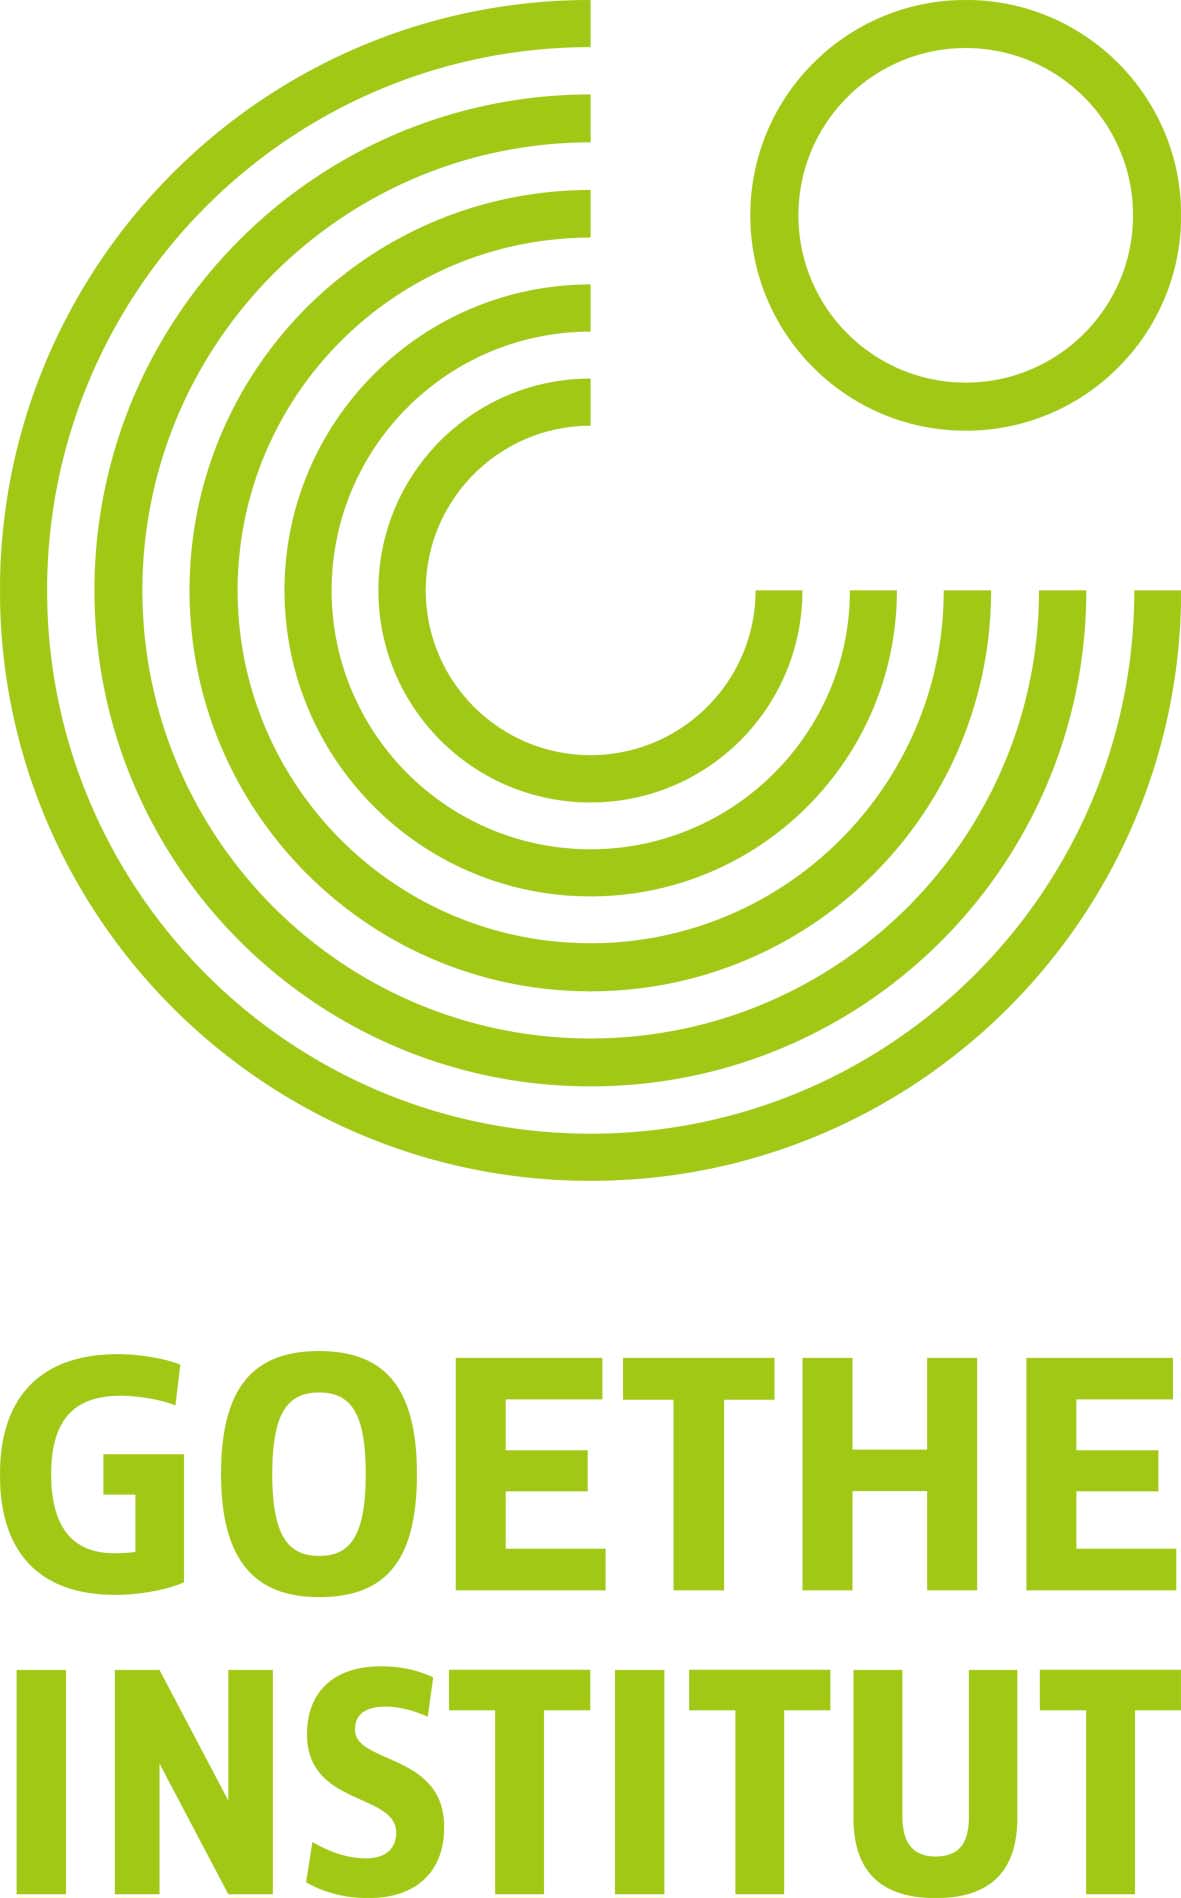 Goethe Institut green on white logo.